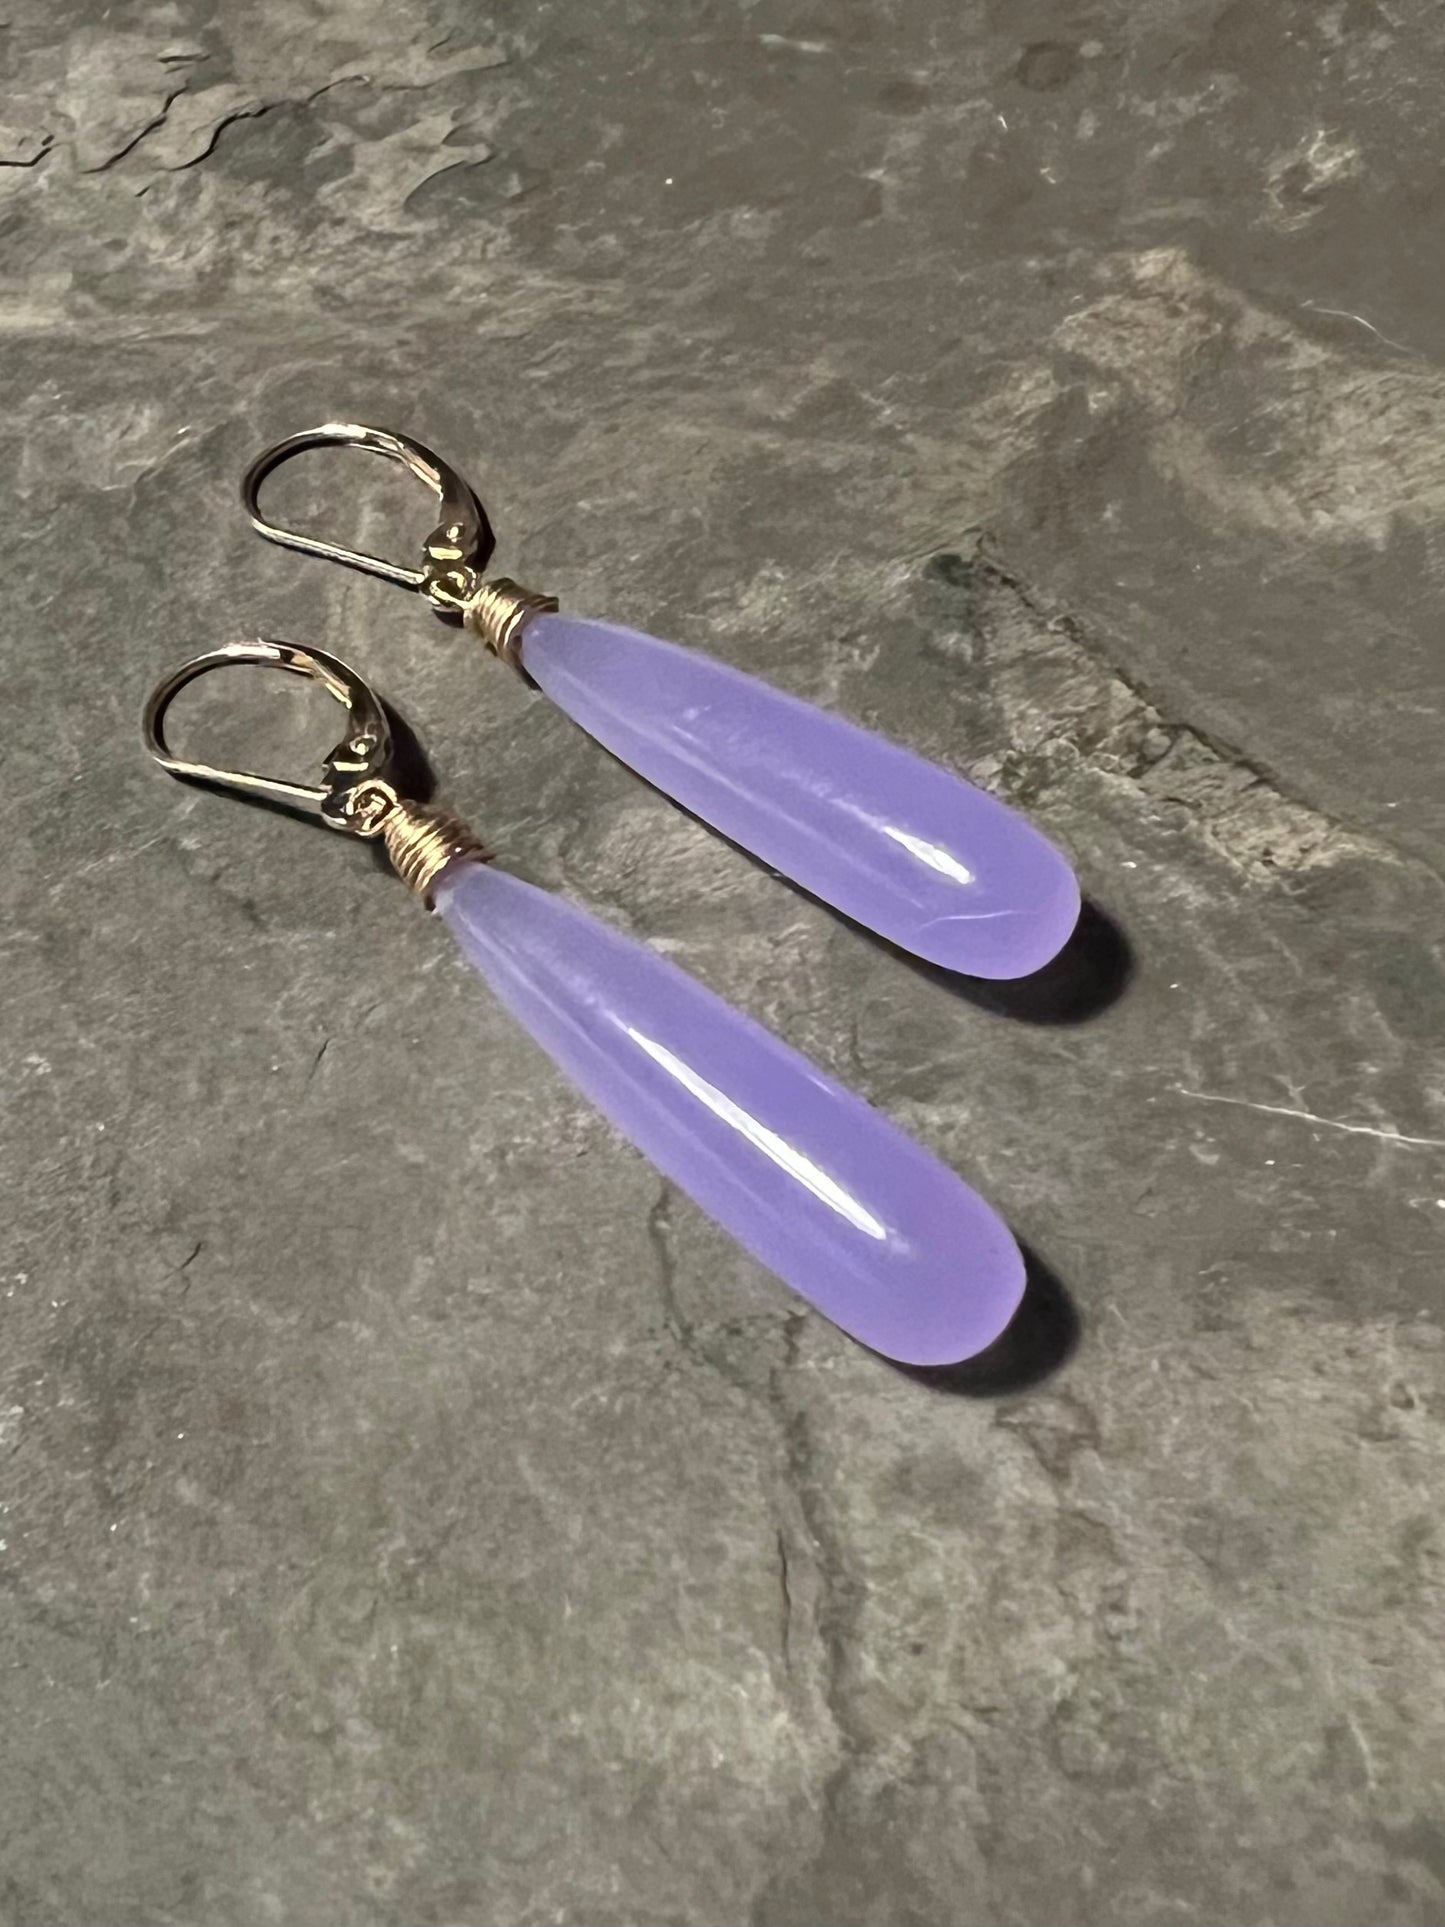 Purple Chalcedony Dangle - Minimalist Earrings